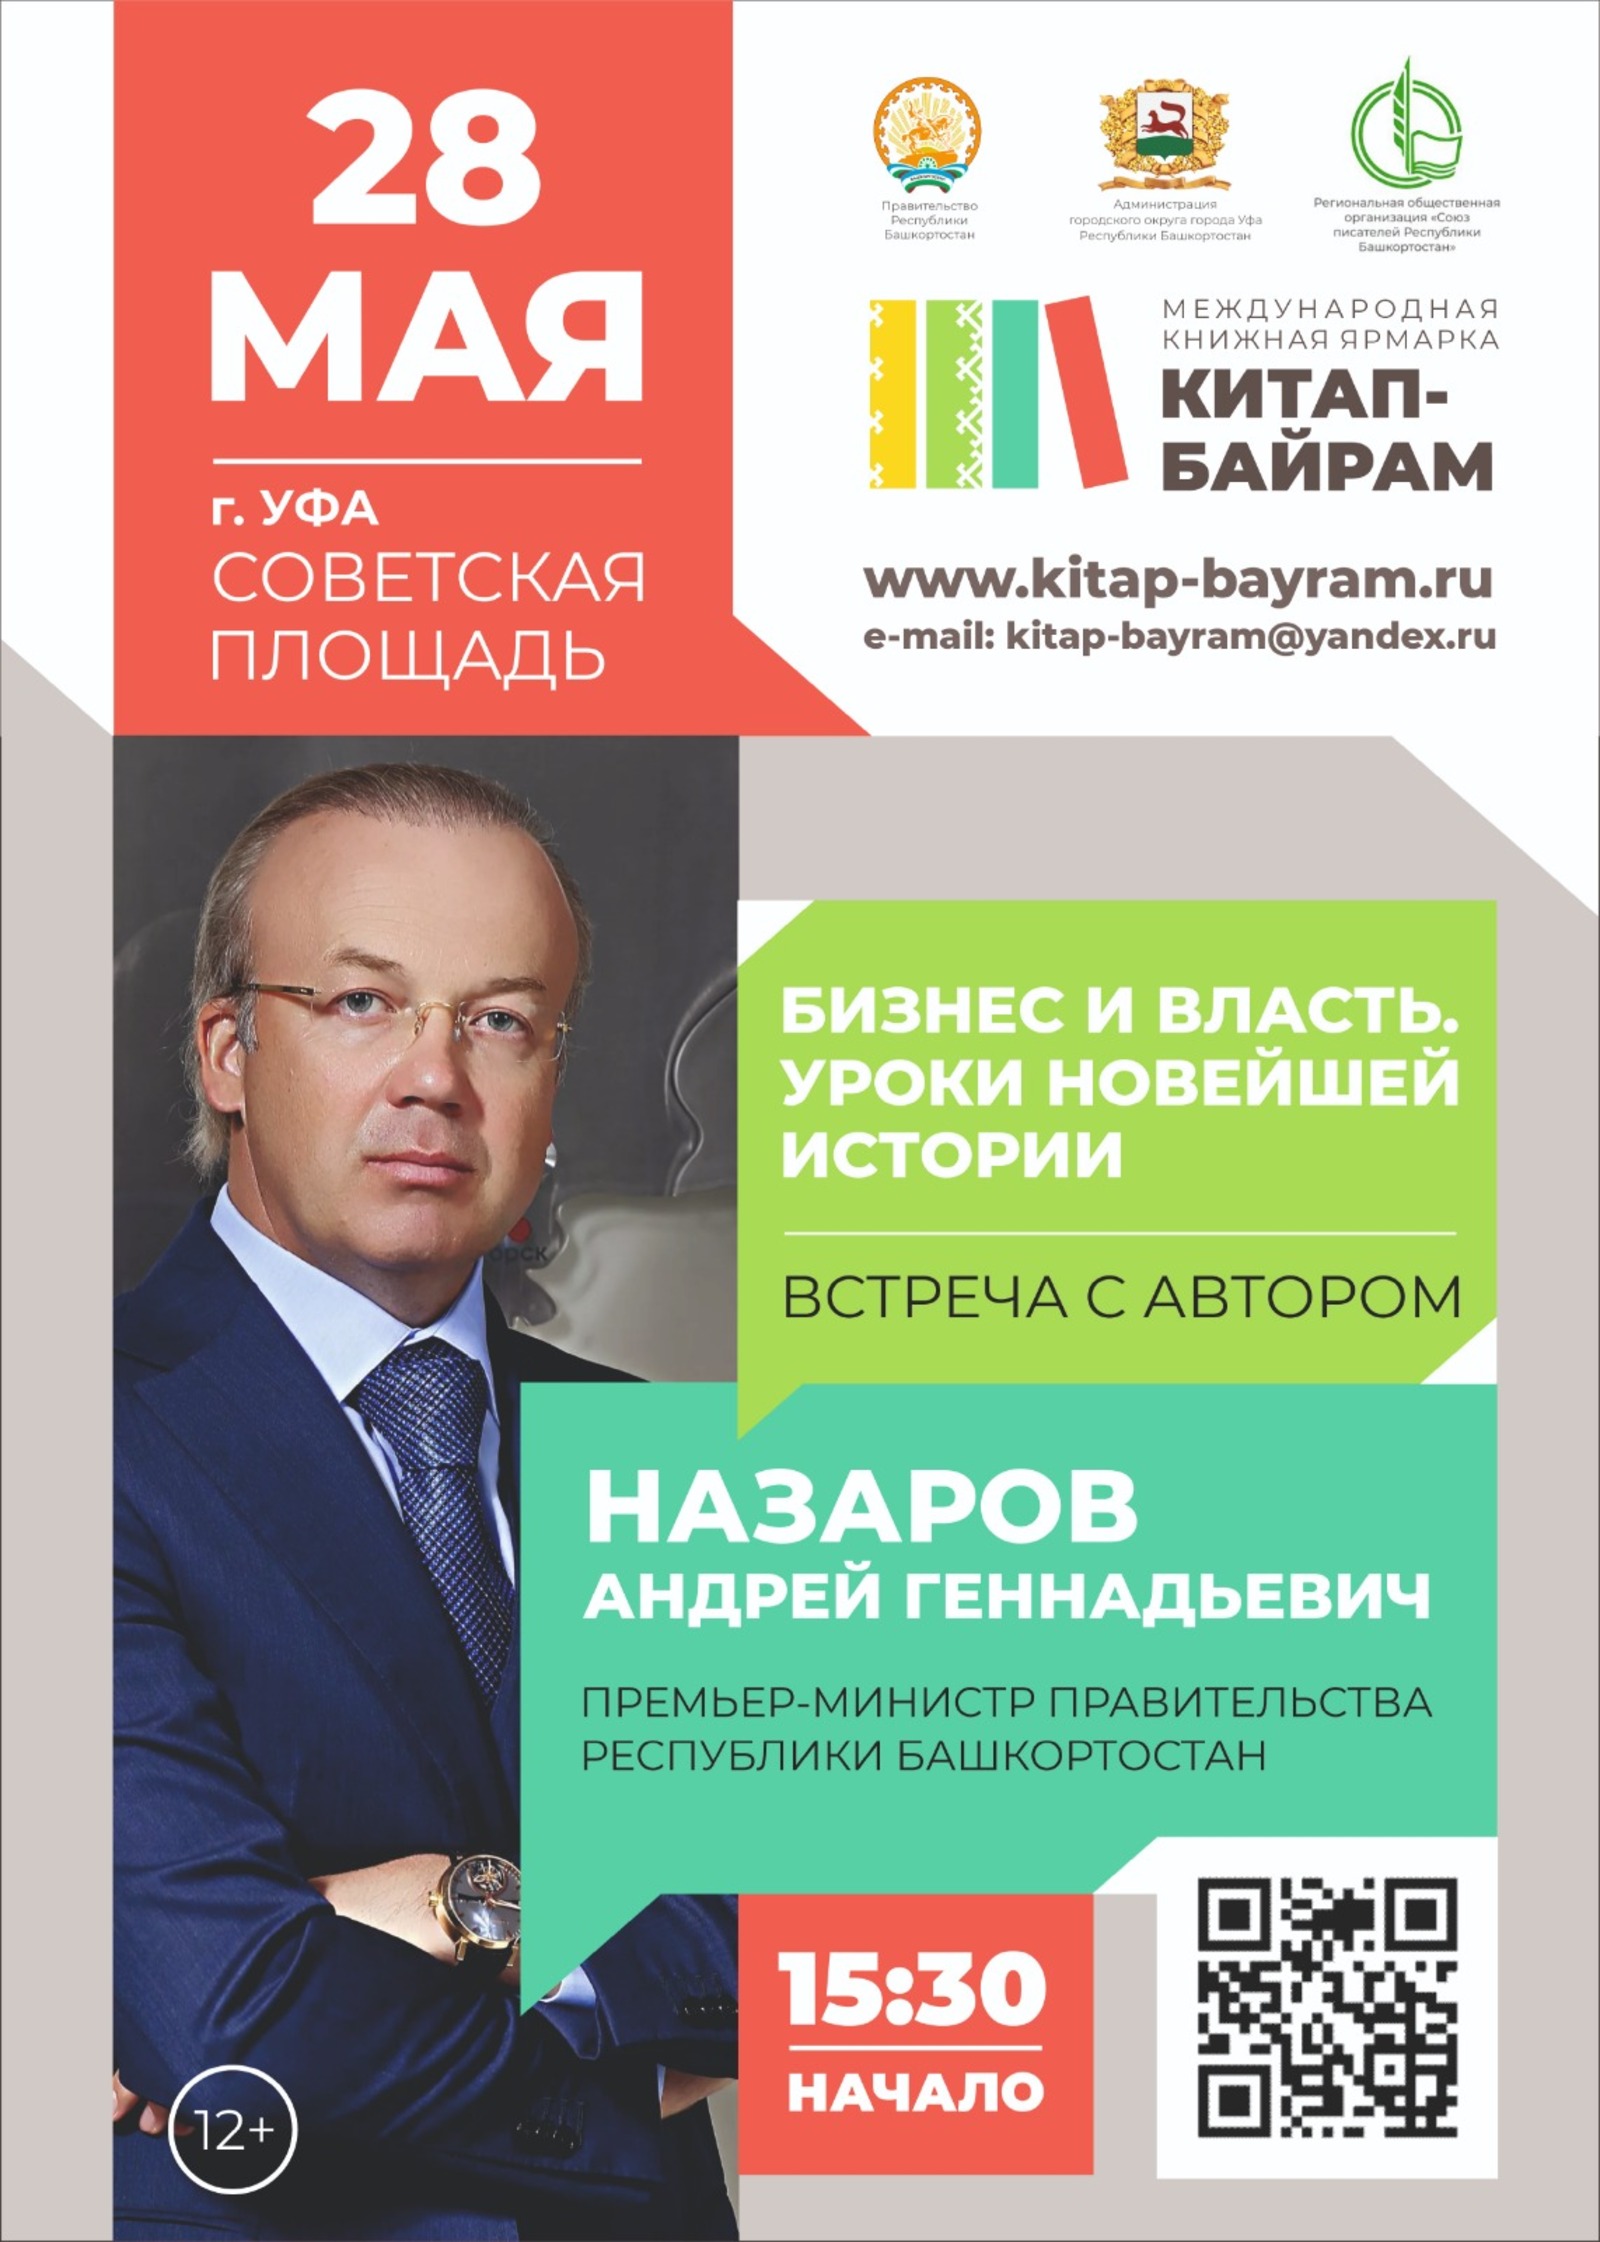 В Башкирии в мае пройдет книжная ярмарка «Китап-байрам»